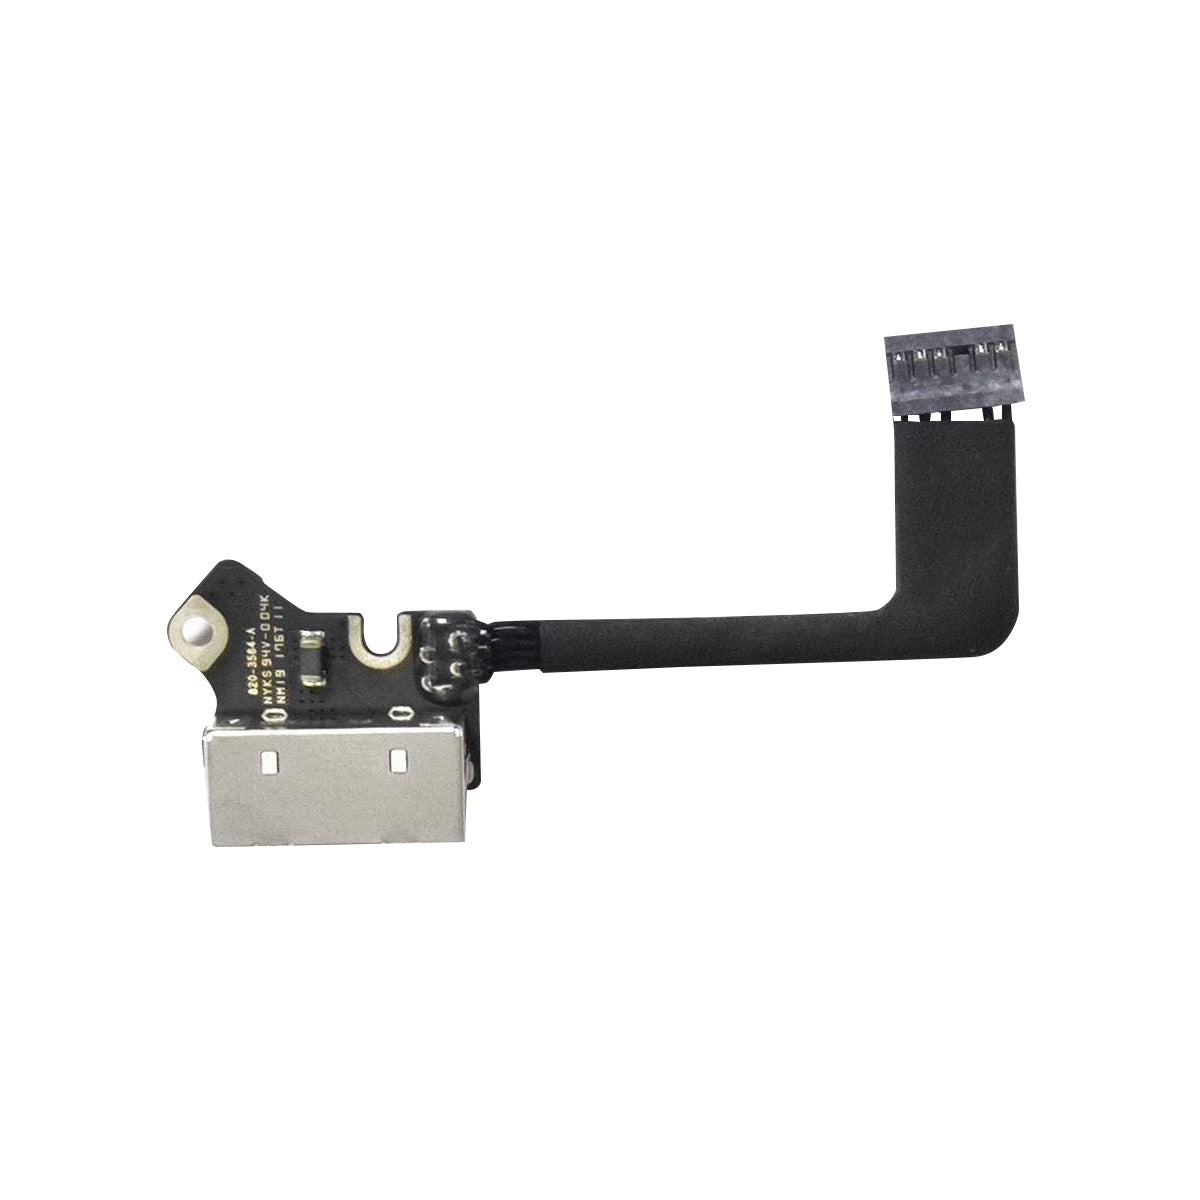 Amazon Ebay Top (SEVEN PUPPY) nuevo para Macbook Pro 13 "A1502 2013-2015 año puerto de carga alimentación DC Jack E/S tarjeta de audio USB